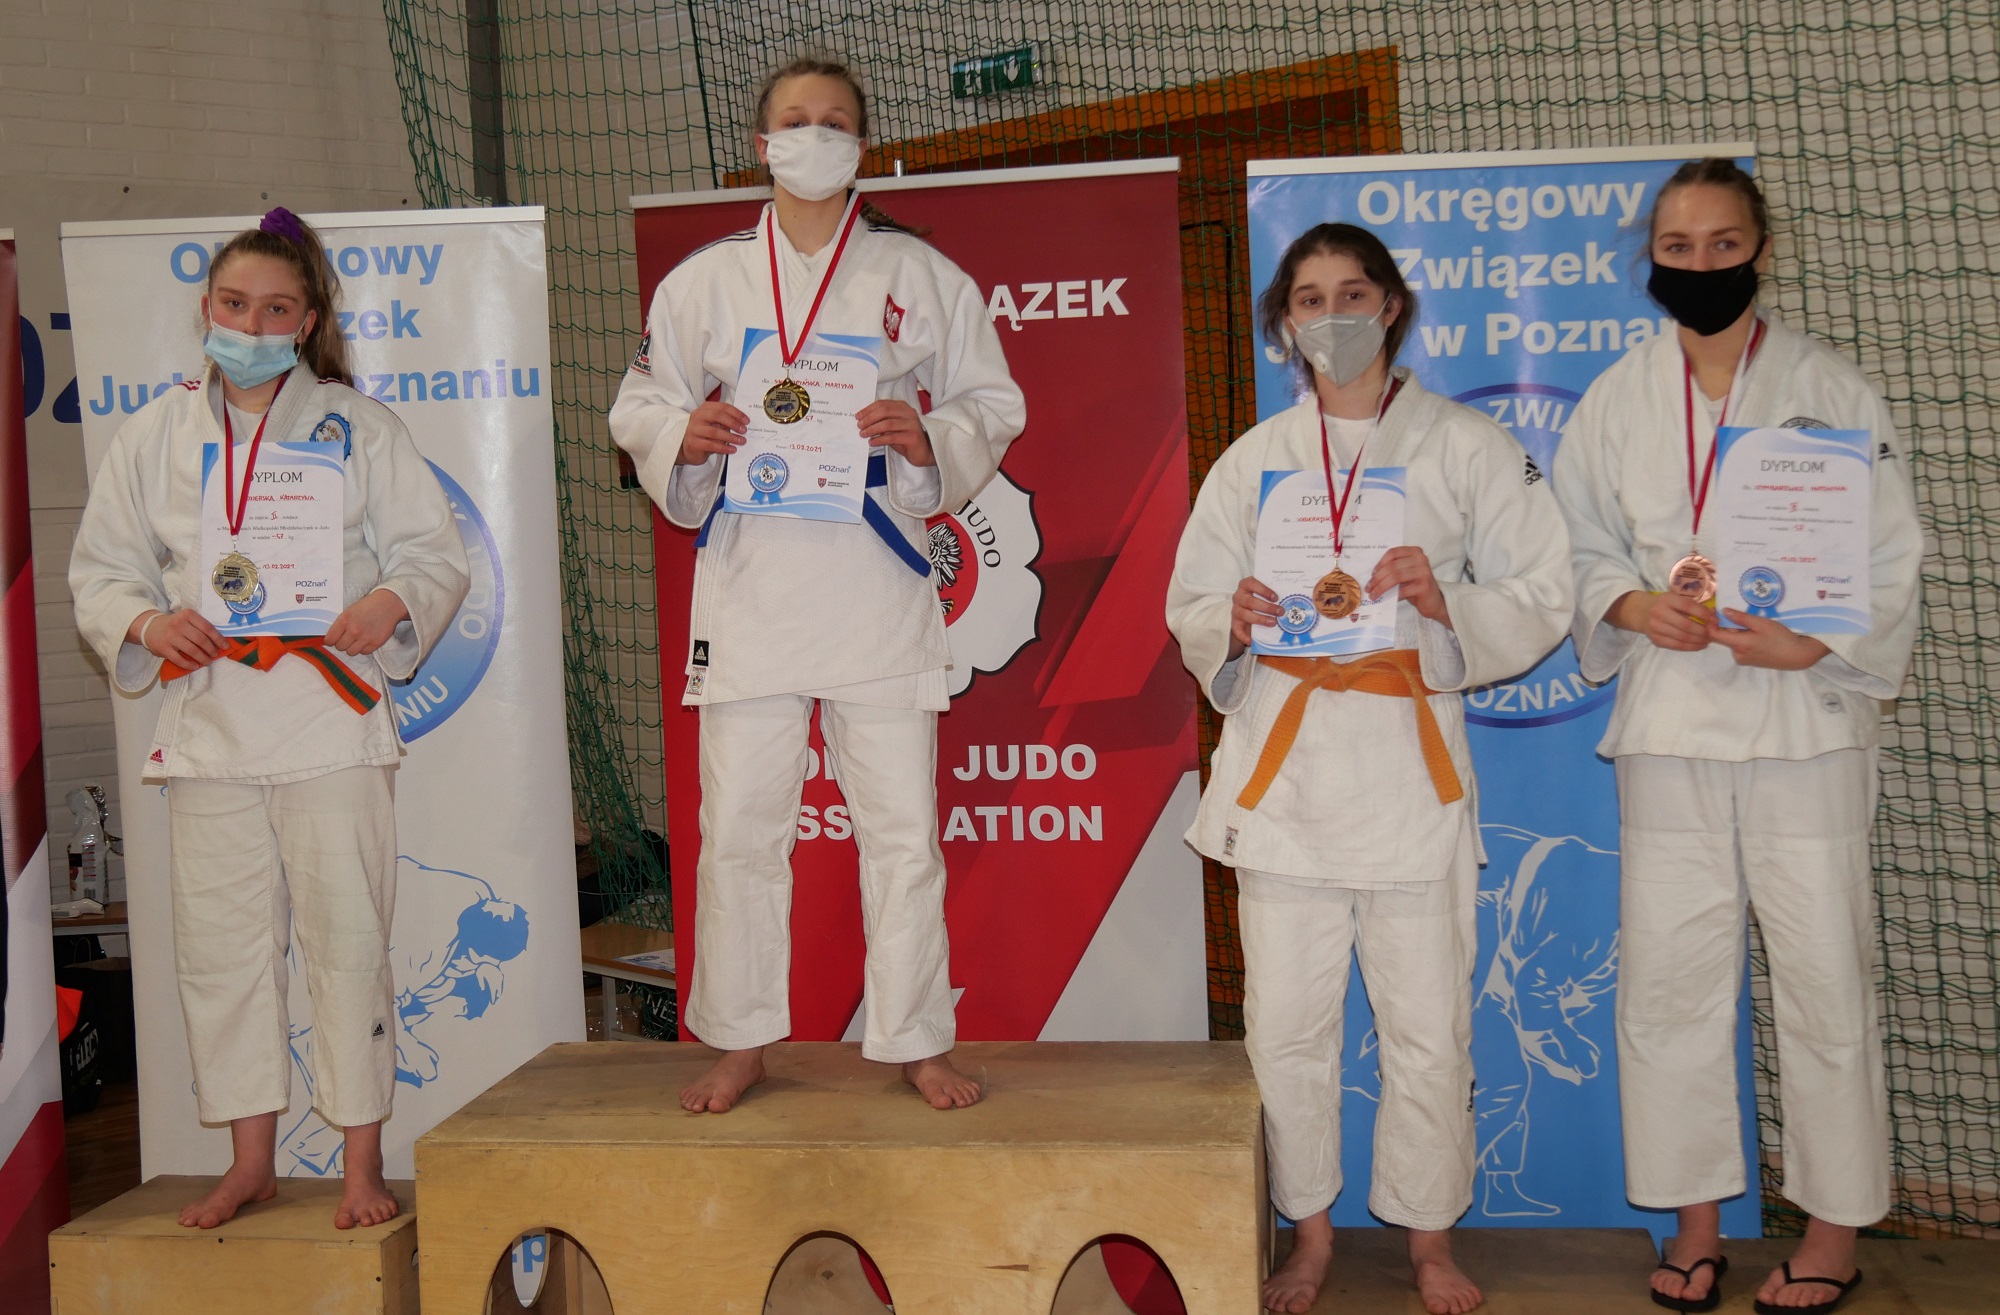 Cztery zawodniczki judo na podium. W strojach sportowych i maseczkach ochronnych.